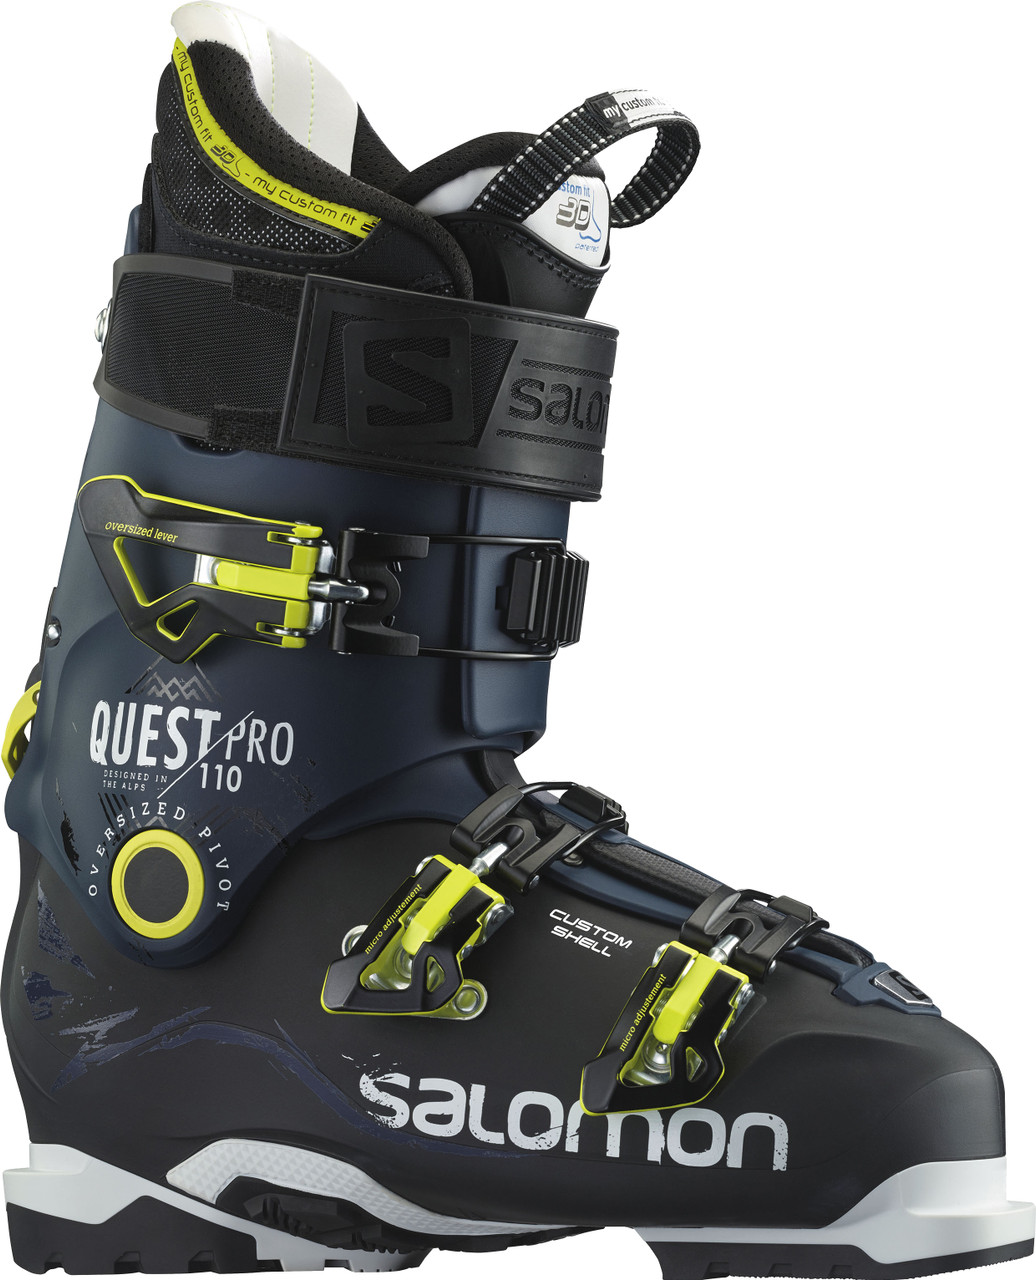 læbe efterklang omgivet Salomon Quest Pro 110 Ski Boots - Men's | MEC